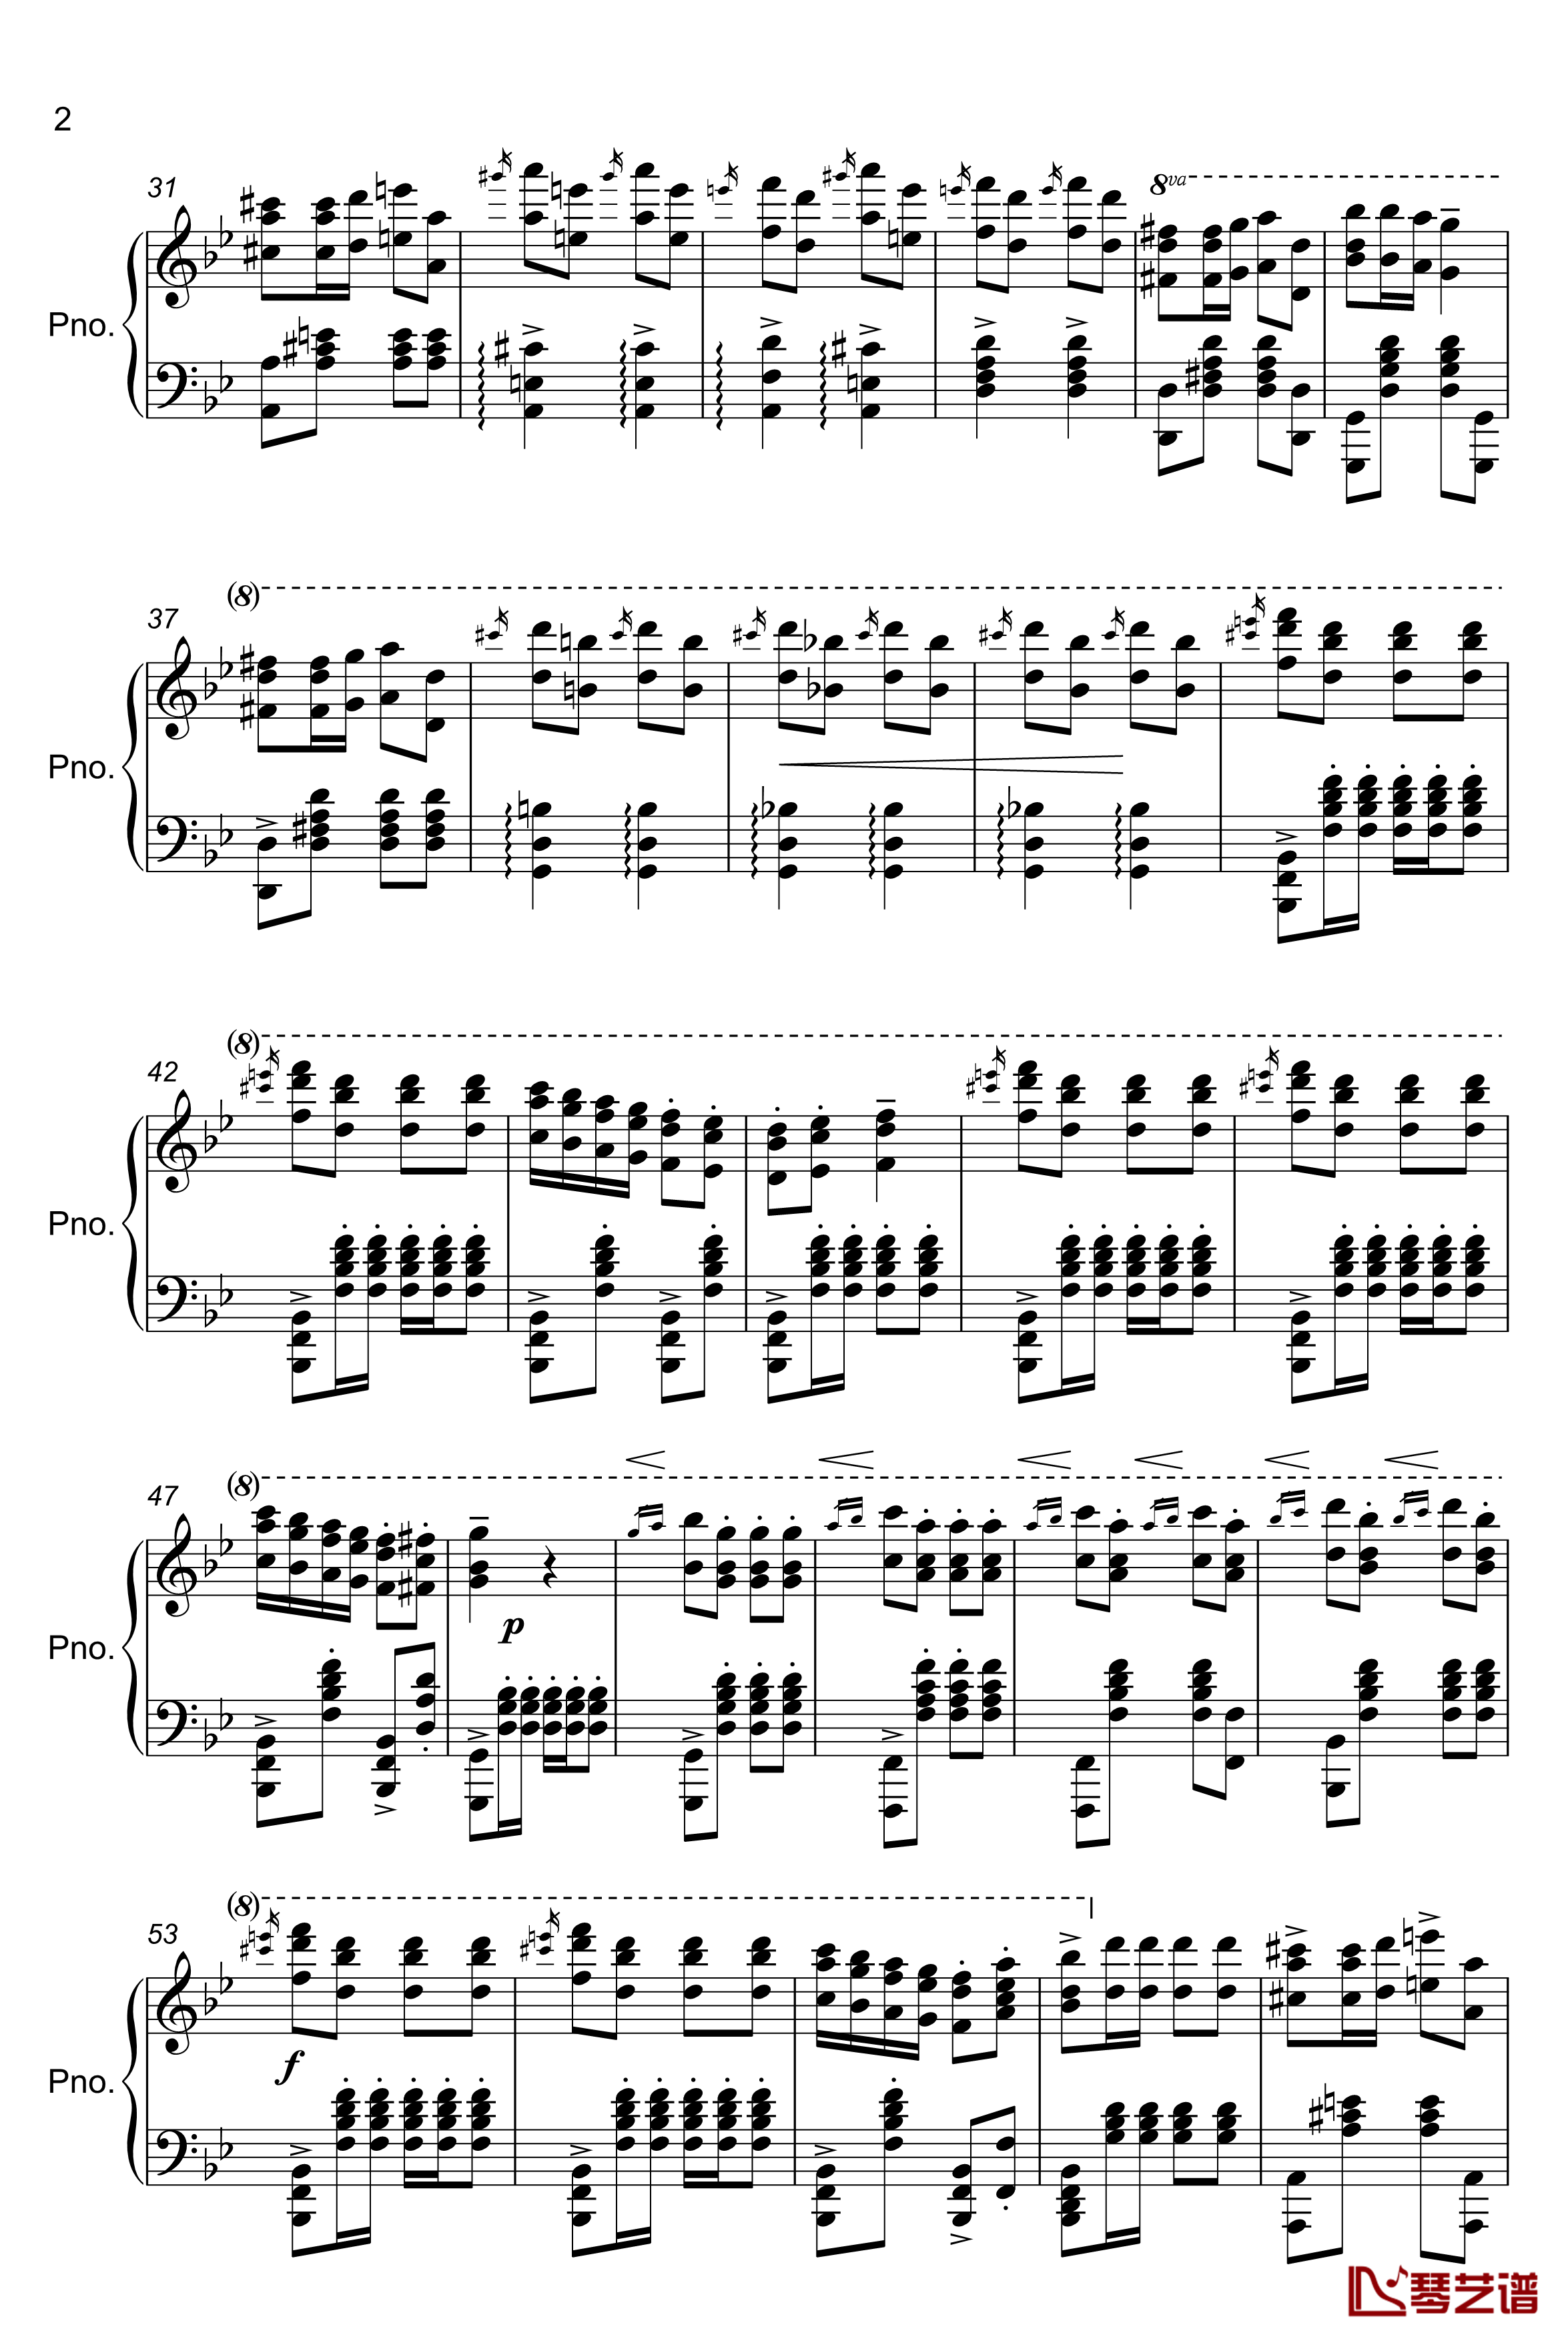 TUEKISH MARCH钢琴谱-kissin2